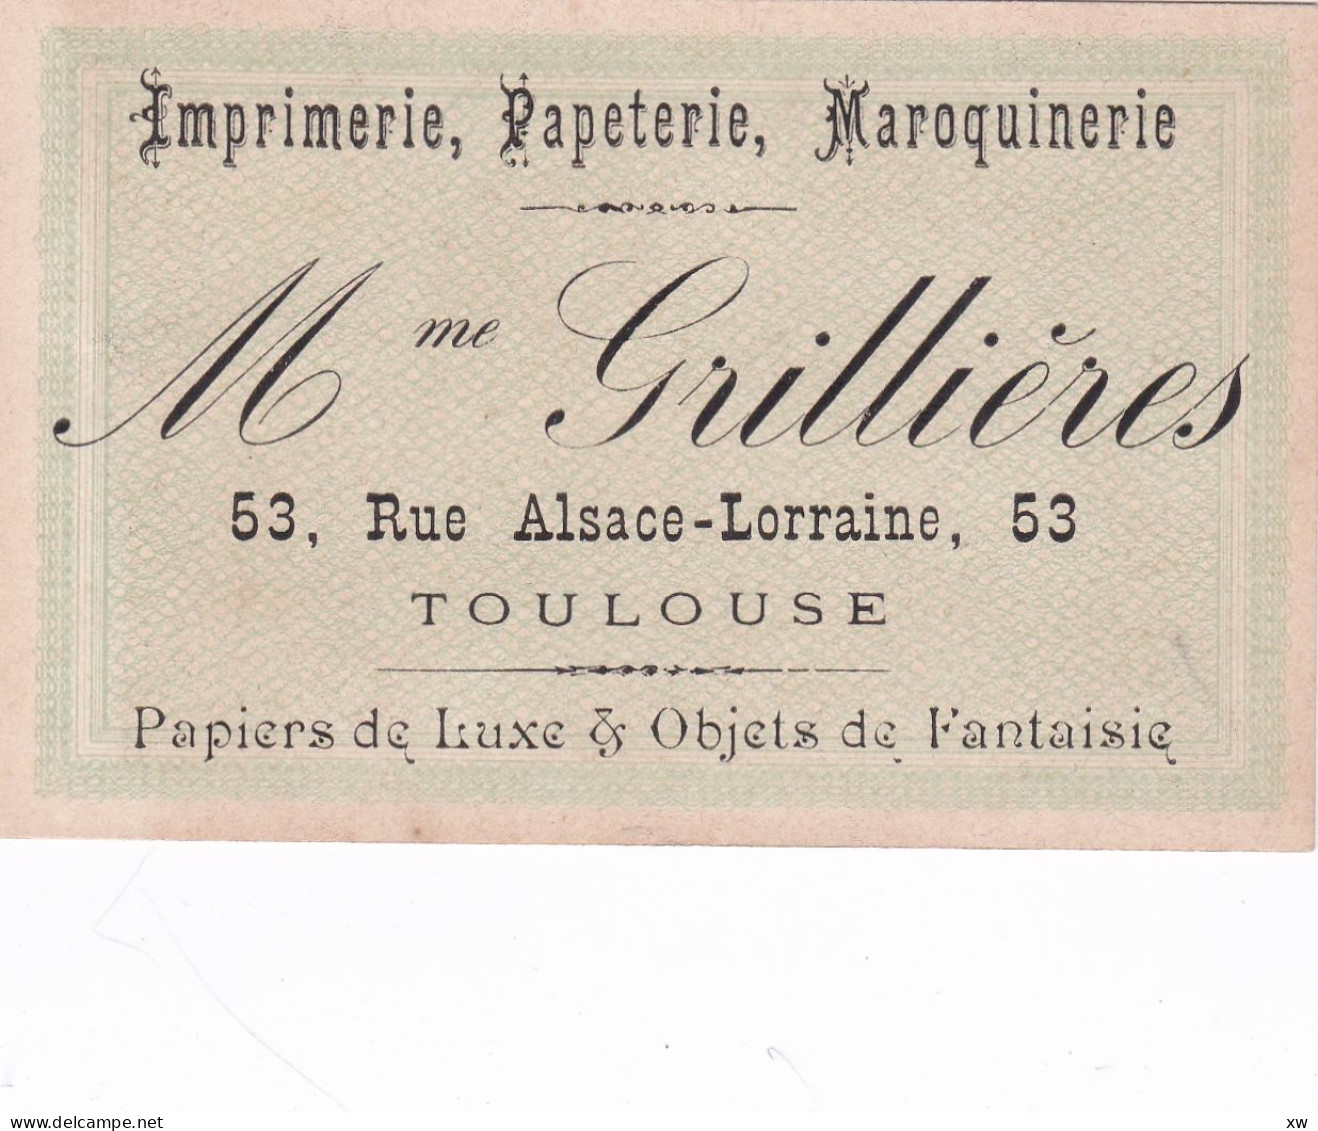 TOULOUSE -31- CARTE DE VISITE - Imprimerie, Papeterie; Maroquinerie - Mme GRILLIERES 53; Rue Alsace-Lorraine - 16-05-24 - Visitenkarten